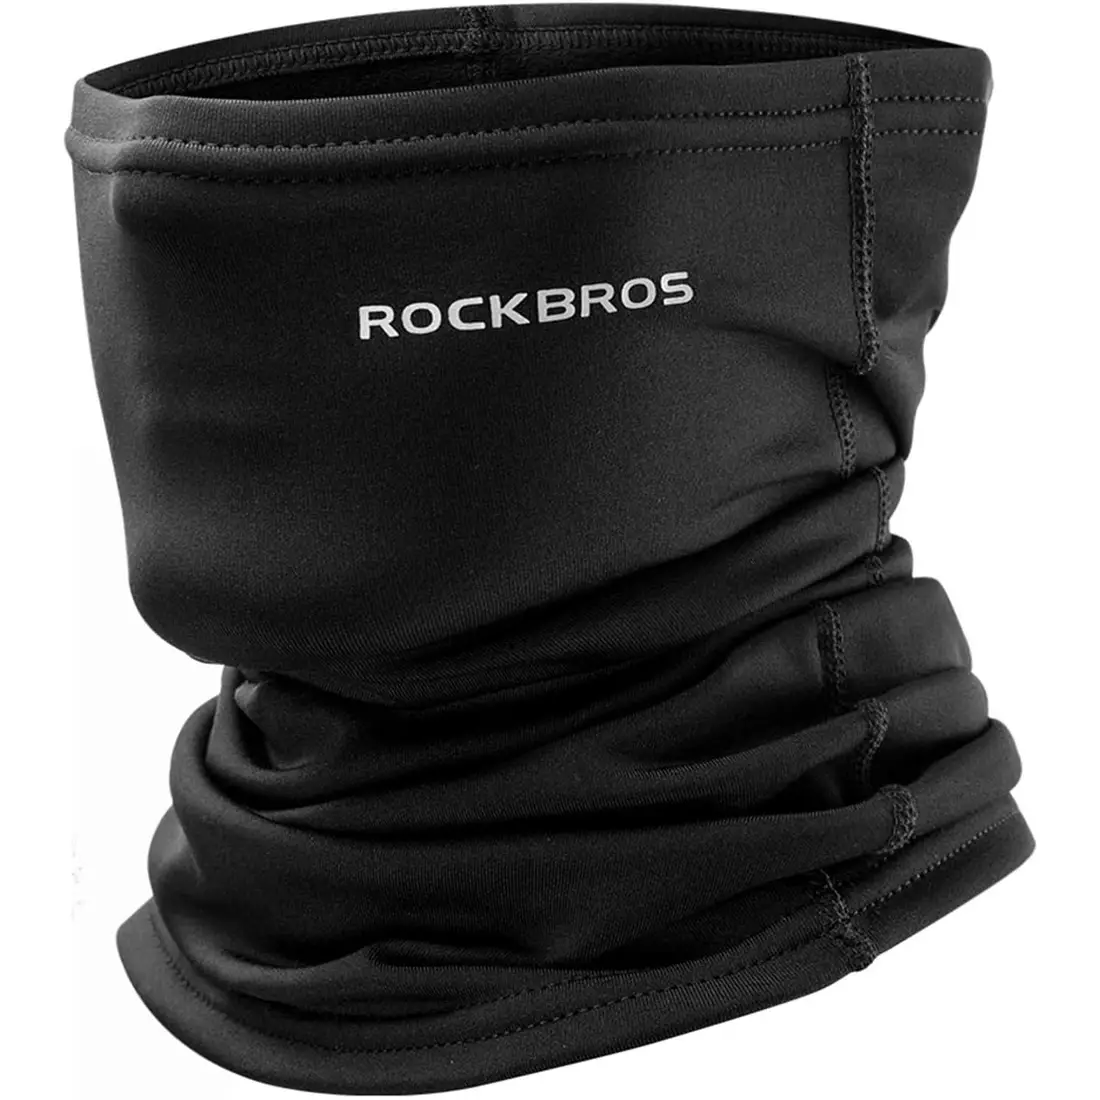 Rockbros Multifunktionales Gesichtsmaske/Schal, schwarz LF7759-1